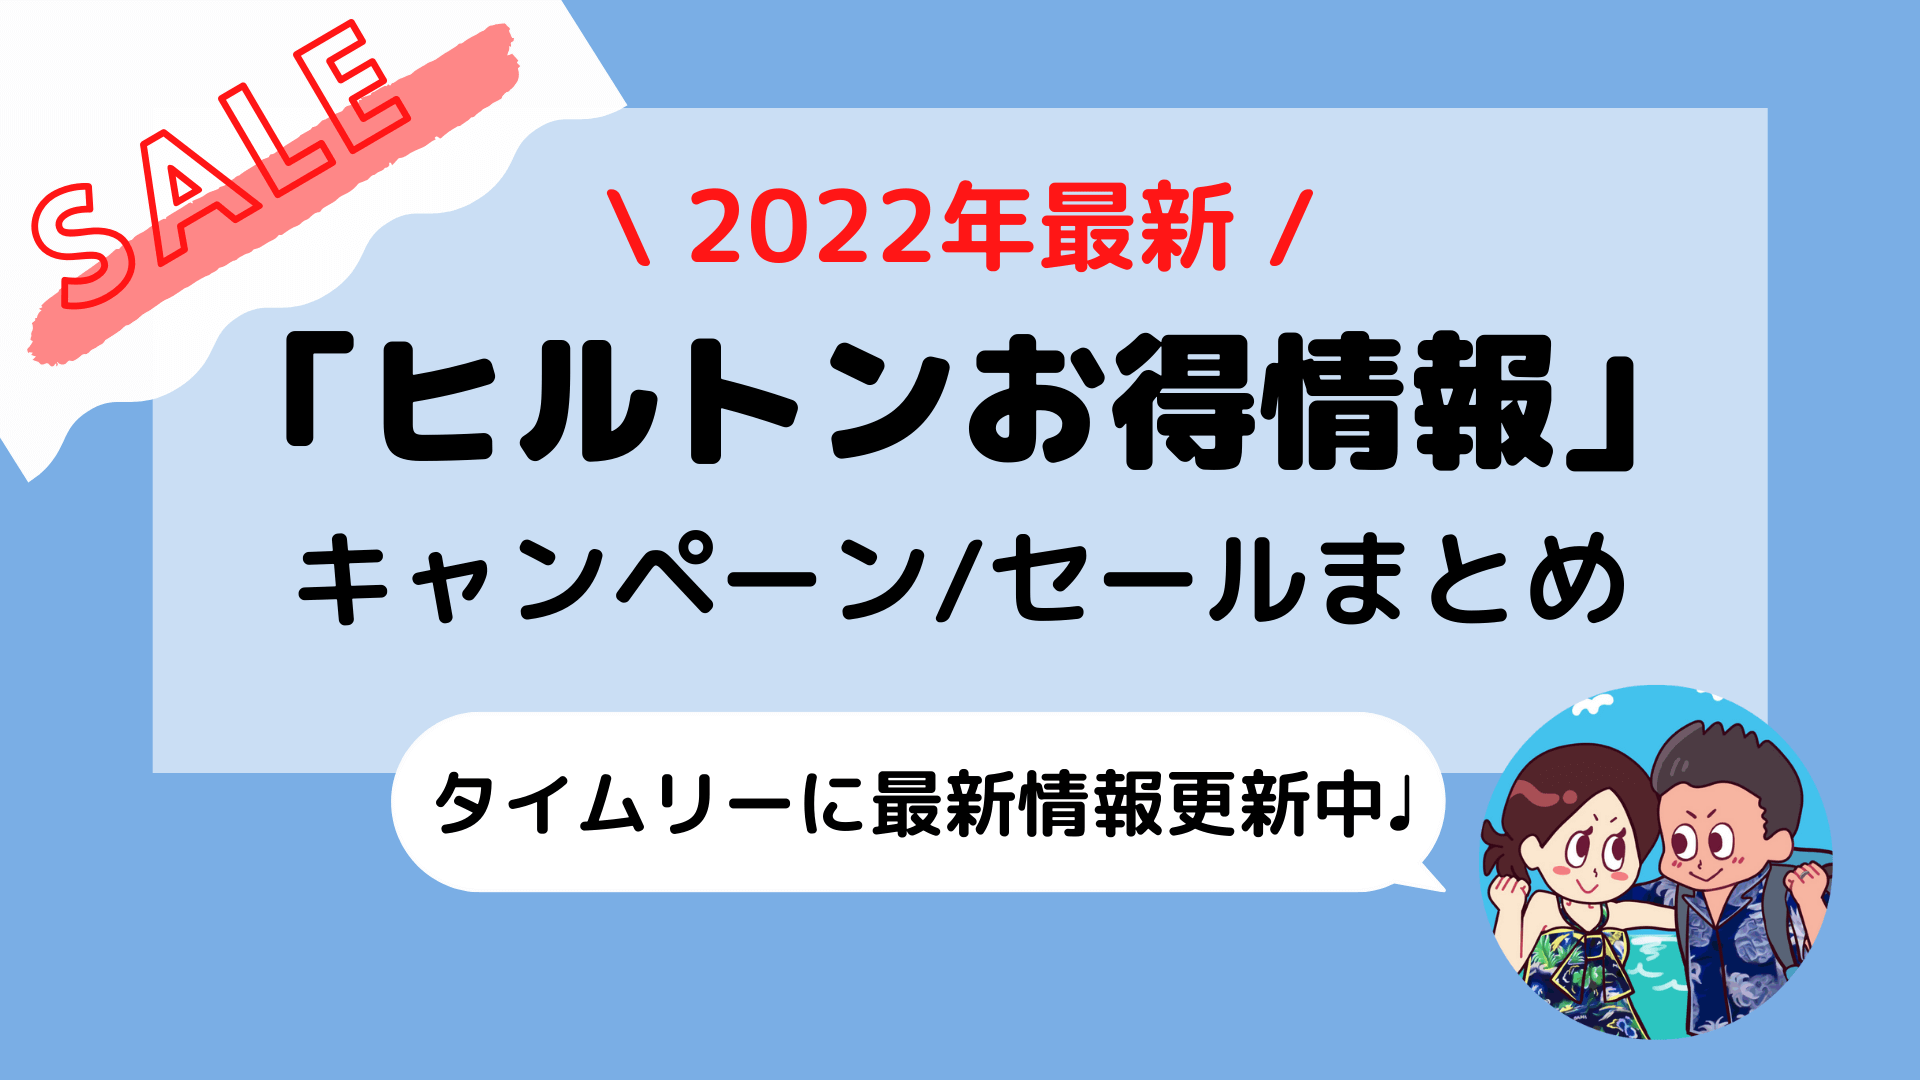 2022年1月最新【ヒルトン(Hilton)】キャンペーン/セール情報まとめ(随時更新あり)